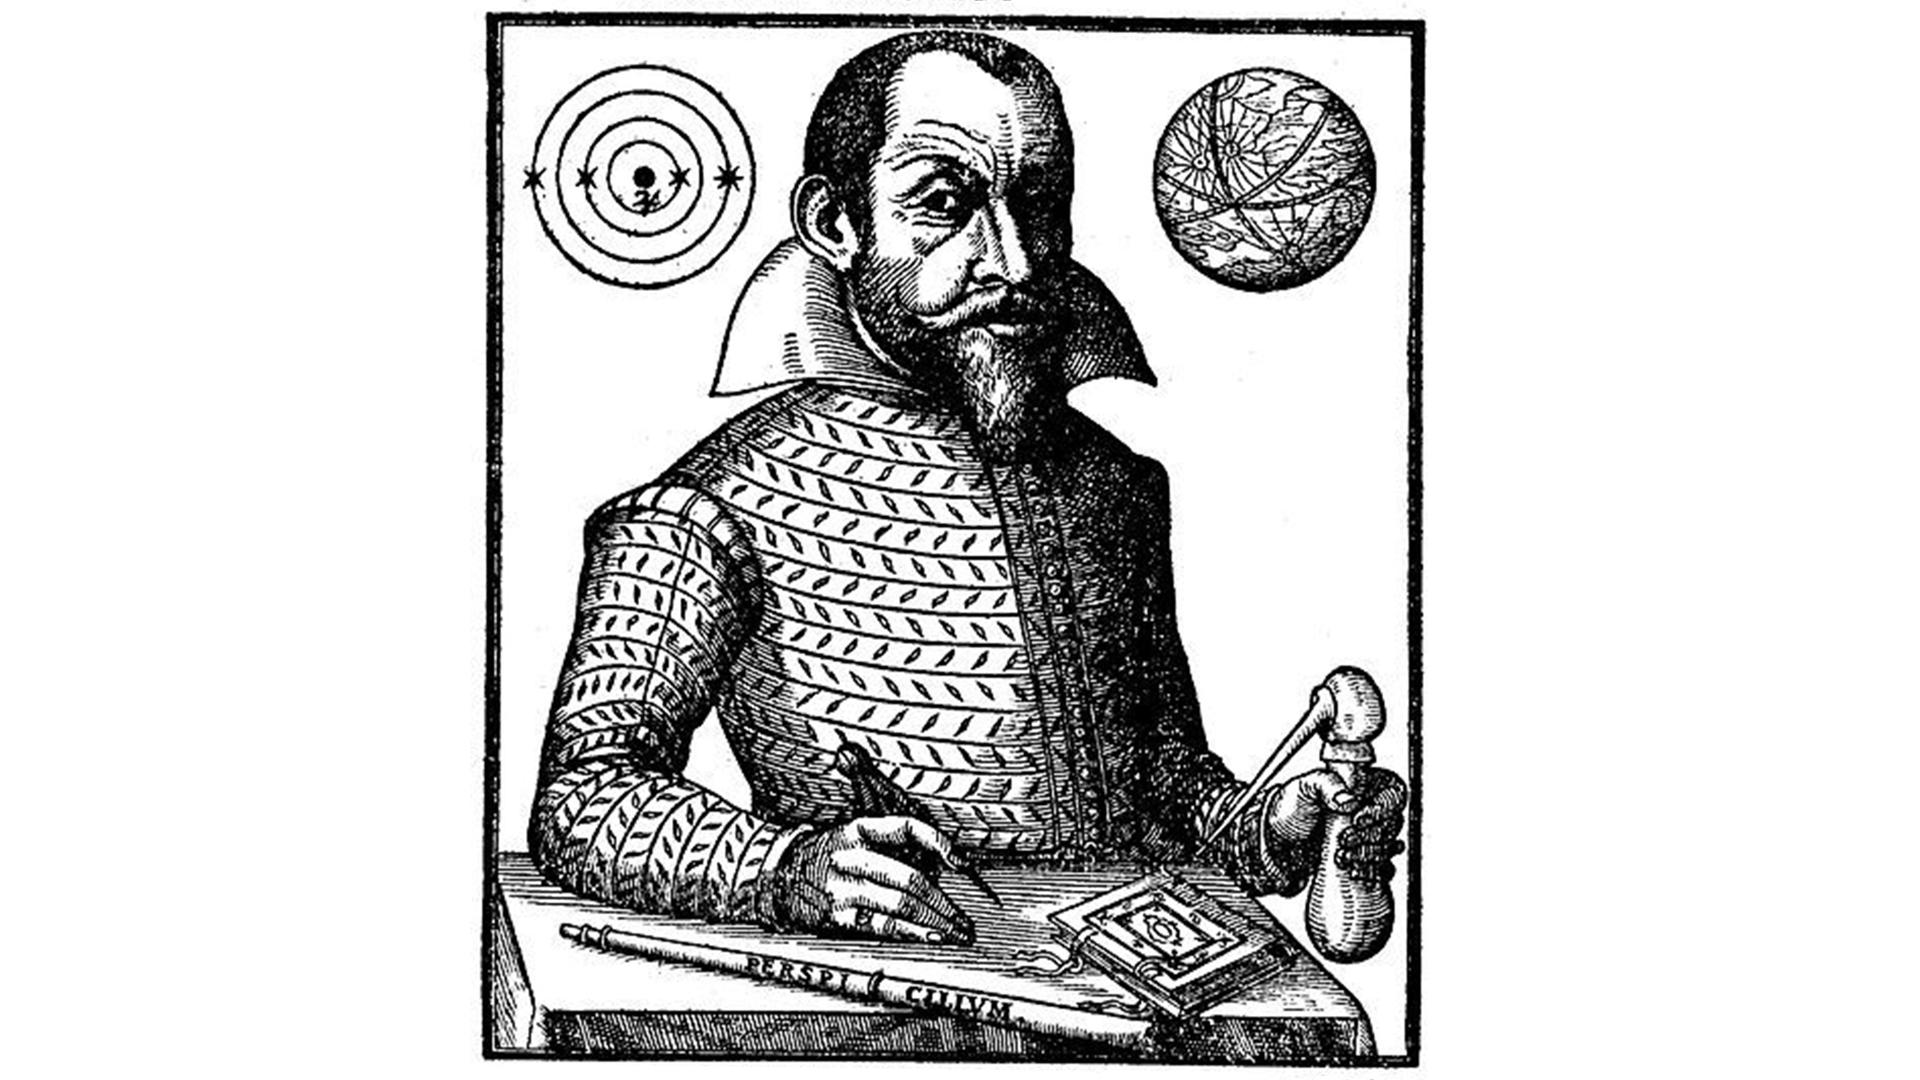 Simon Marius, Darstellung aus seinem Hauptwerk "Die Welt des Jupiters". Eine Zeichnung zeigt einen ernst blickenden Mann mit Bart, der festlich gekleidet ist. Er sitzt an einem Tisch und hält in der rechten Hand einen Zirkel, vor ihm liegt ein Fernrohr.